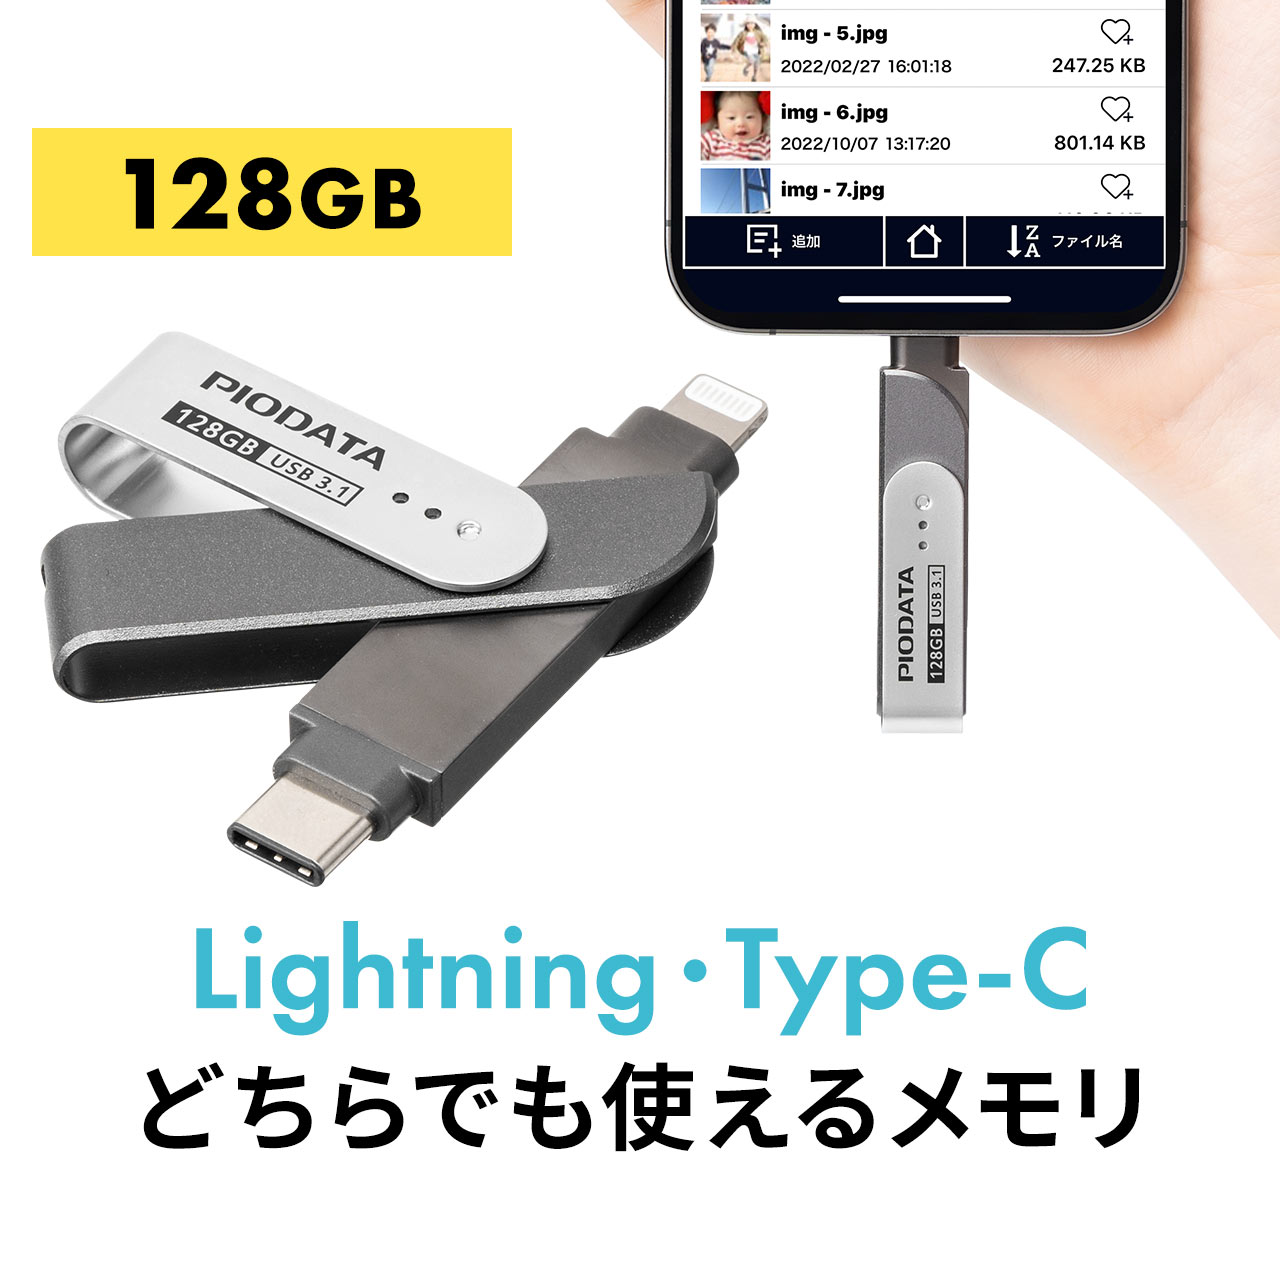 【楽天市場】iPhone iPad USBメモリ lightning-Type-Cメモリ